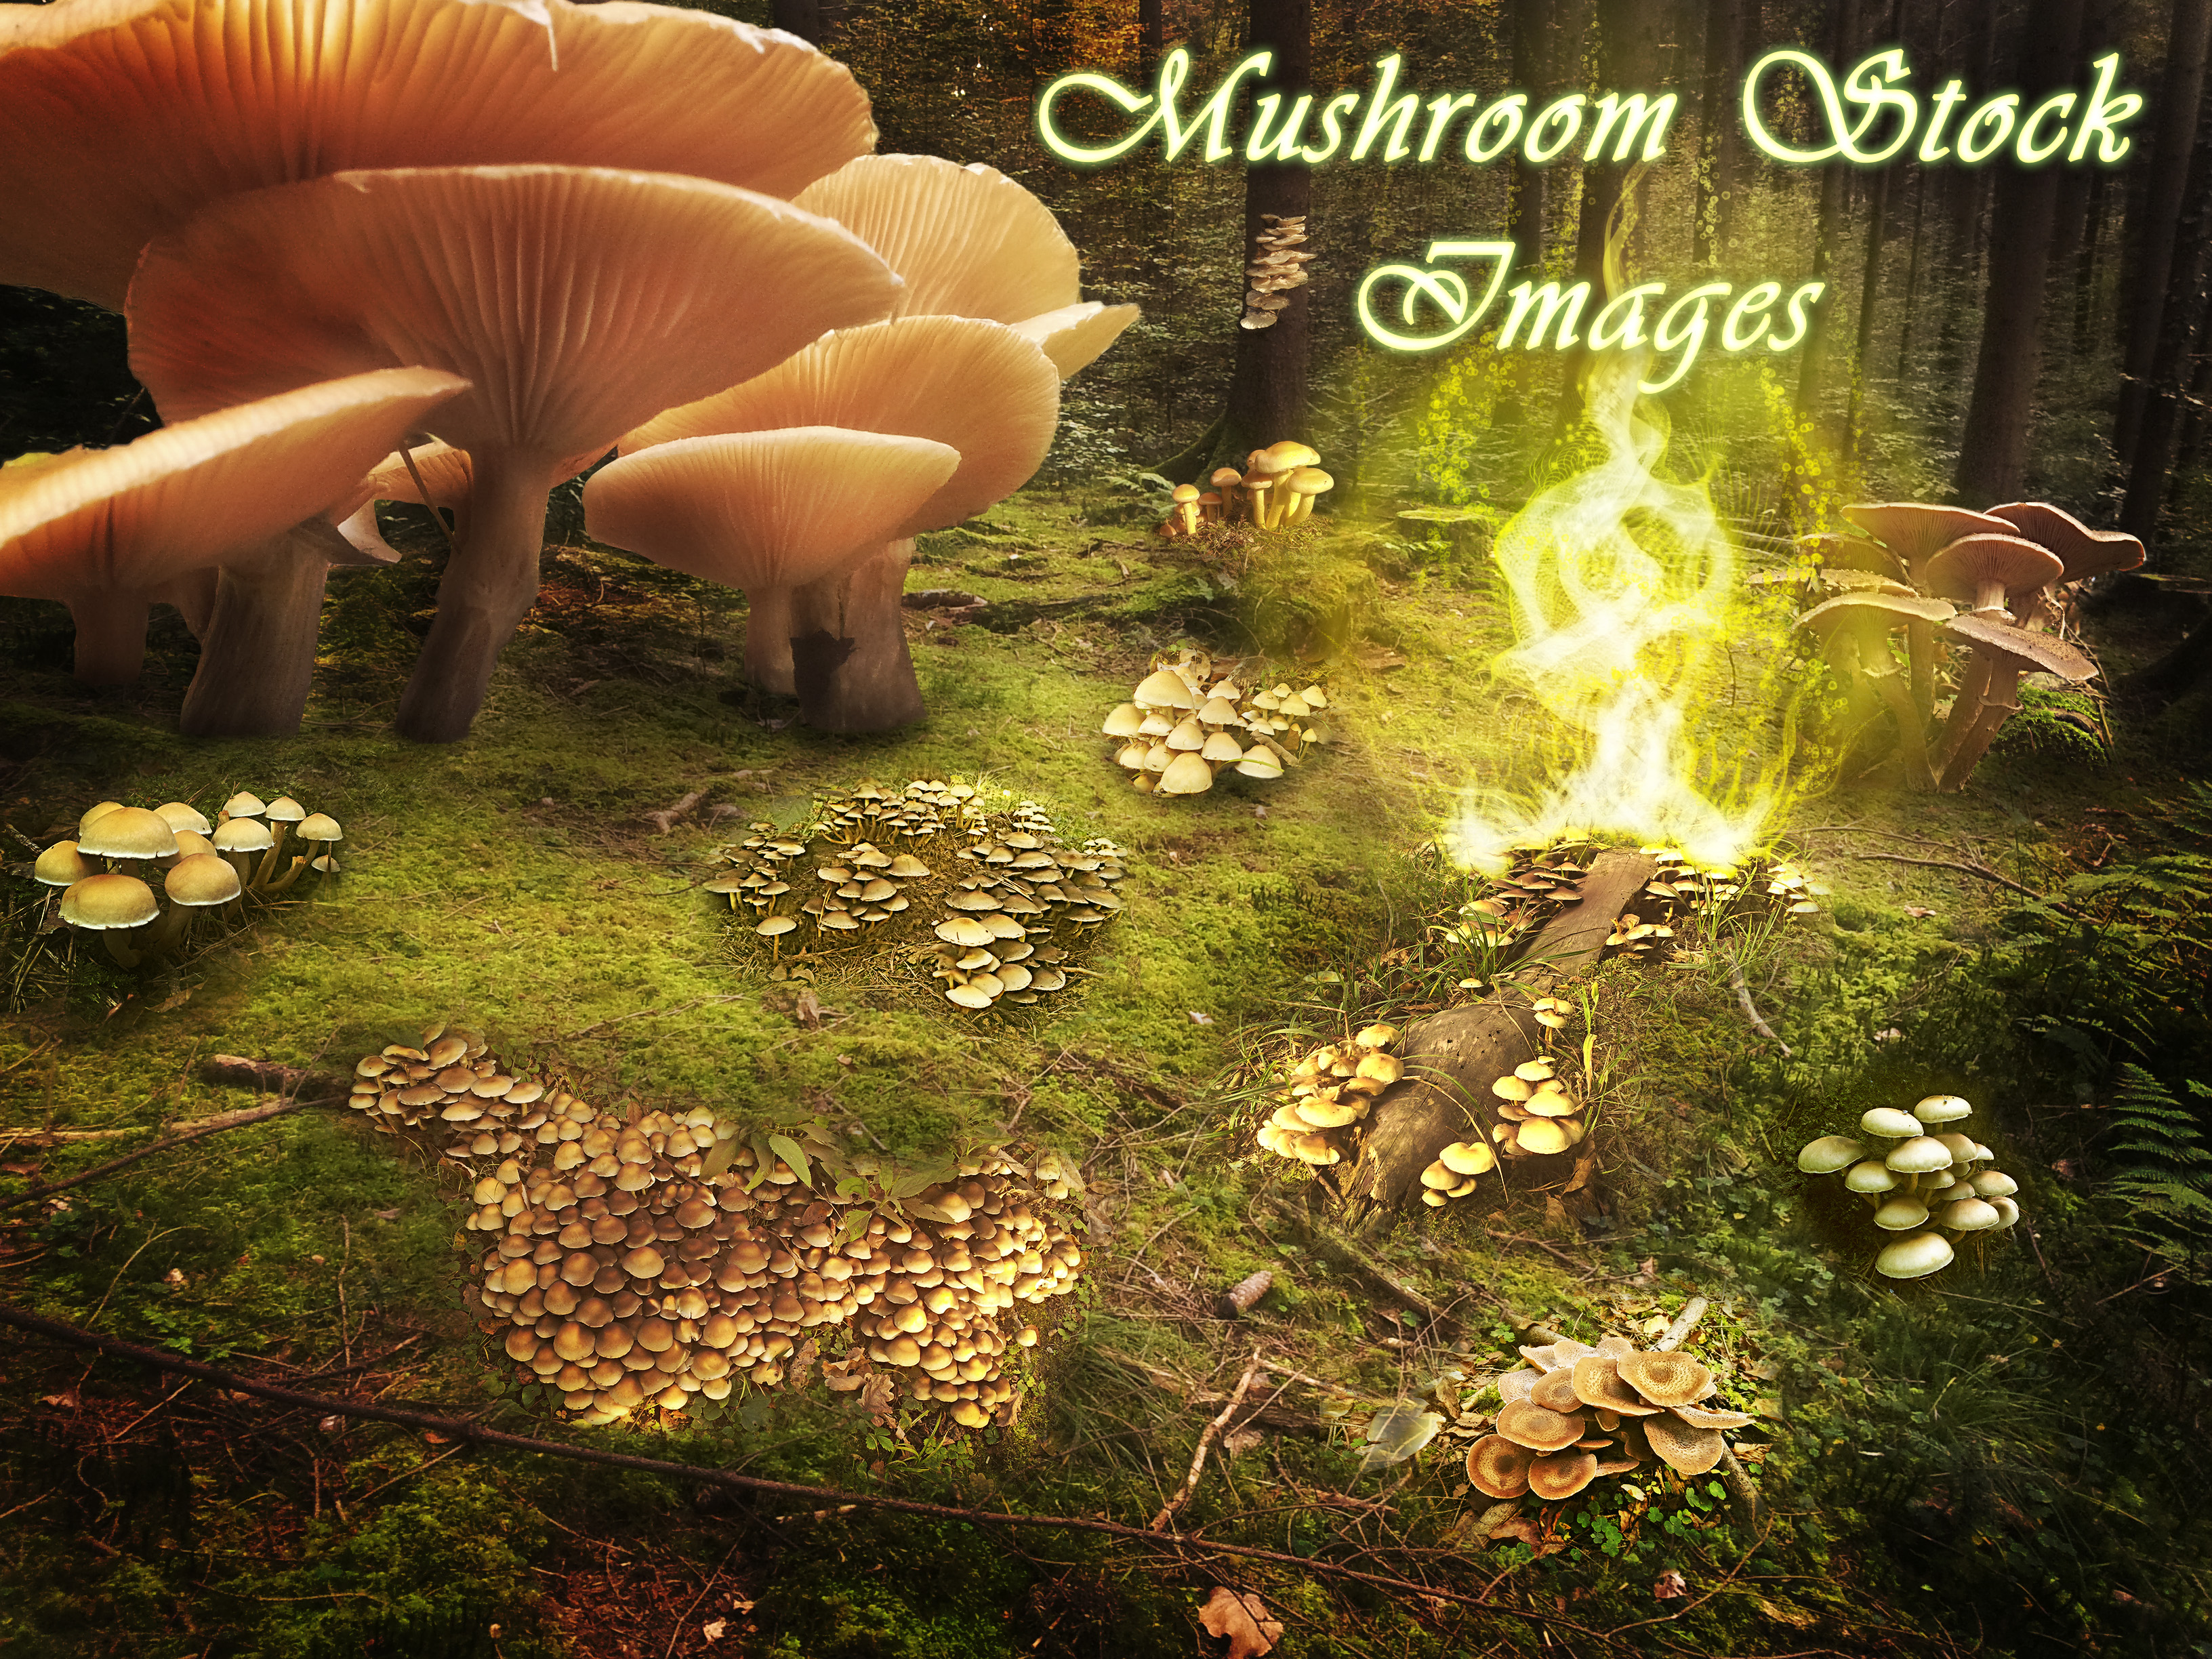 30 Mushroom Stock Images